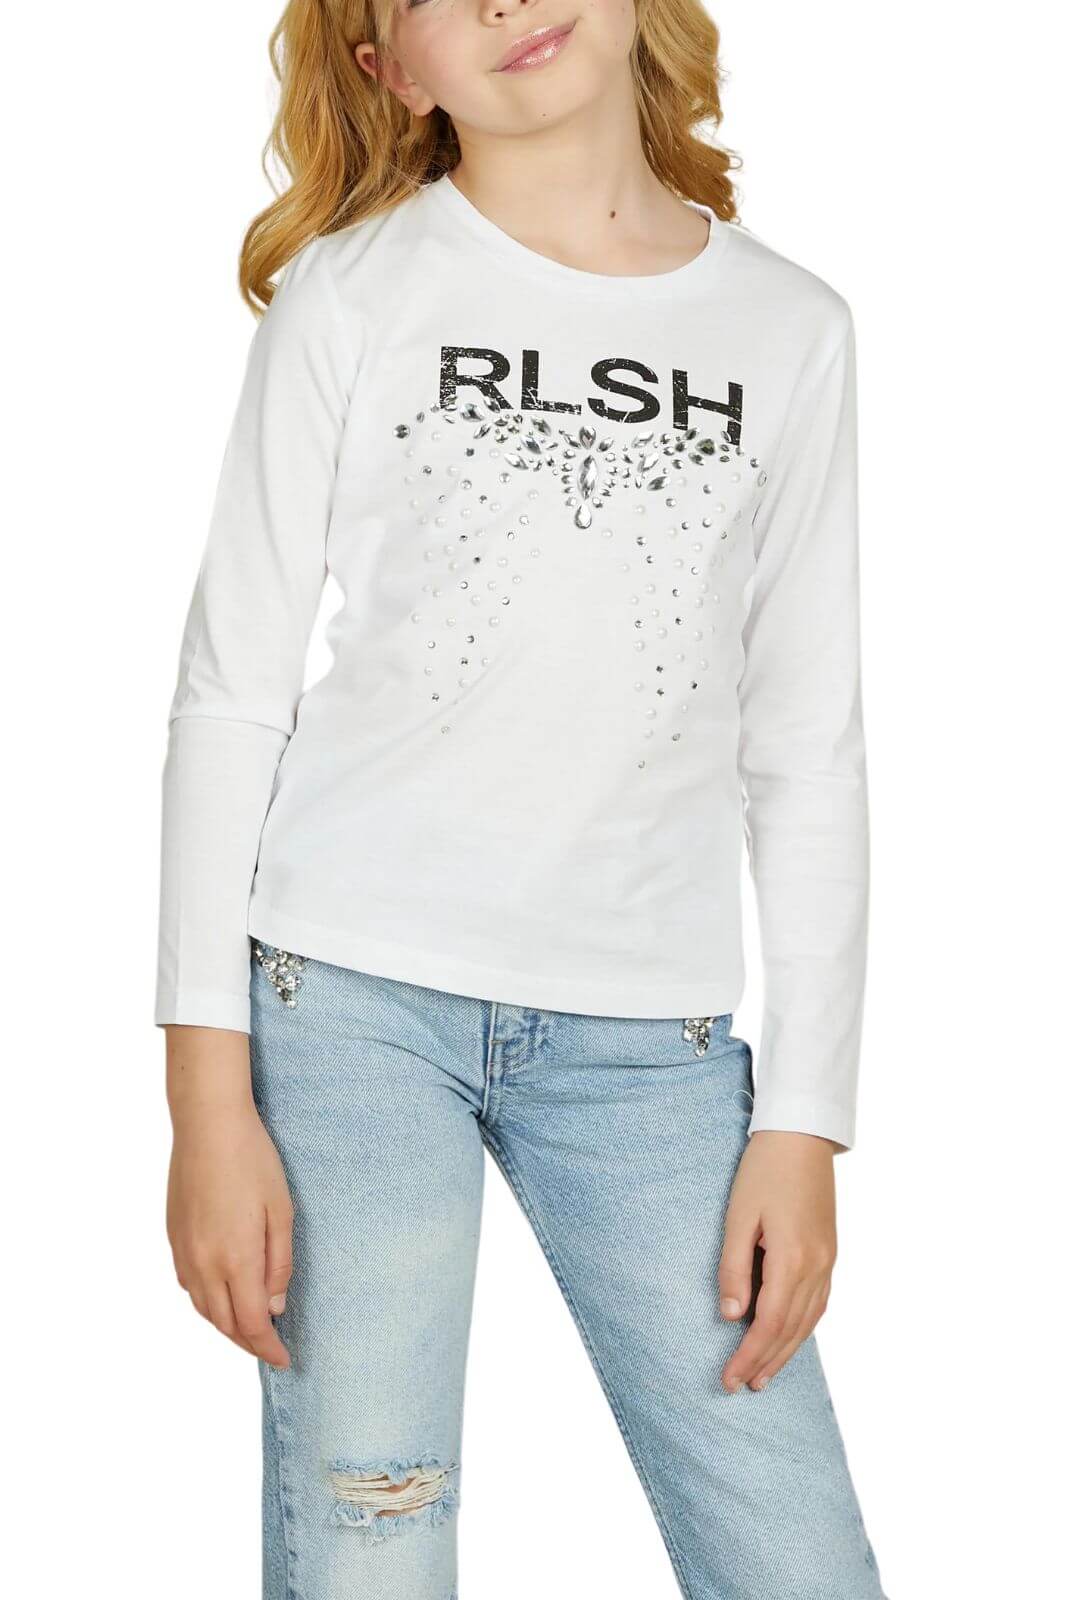 Relish Girl T-Shirt Bambina GOLOSETTA